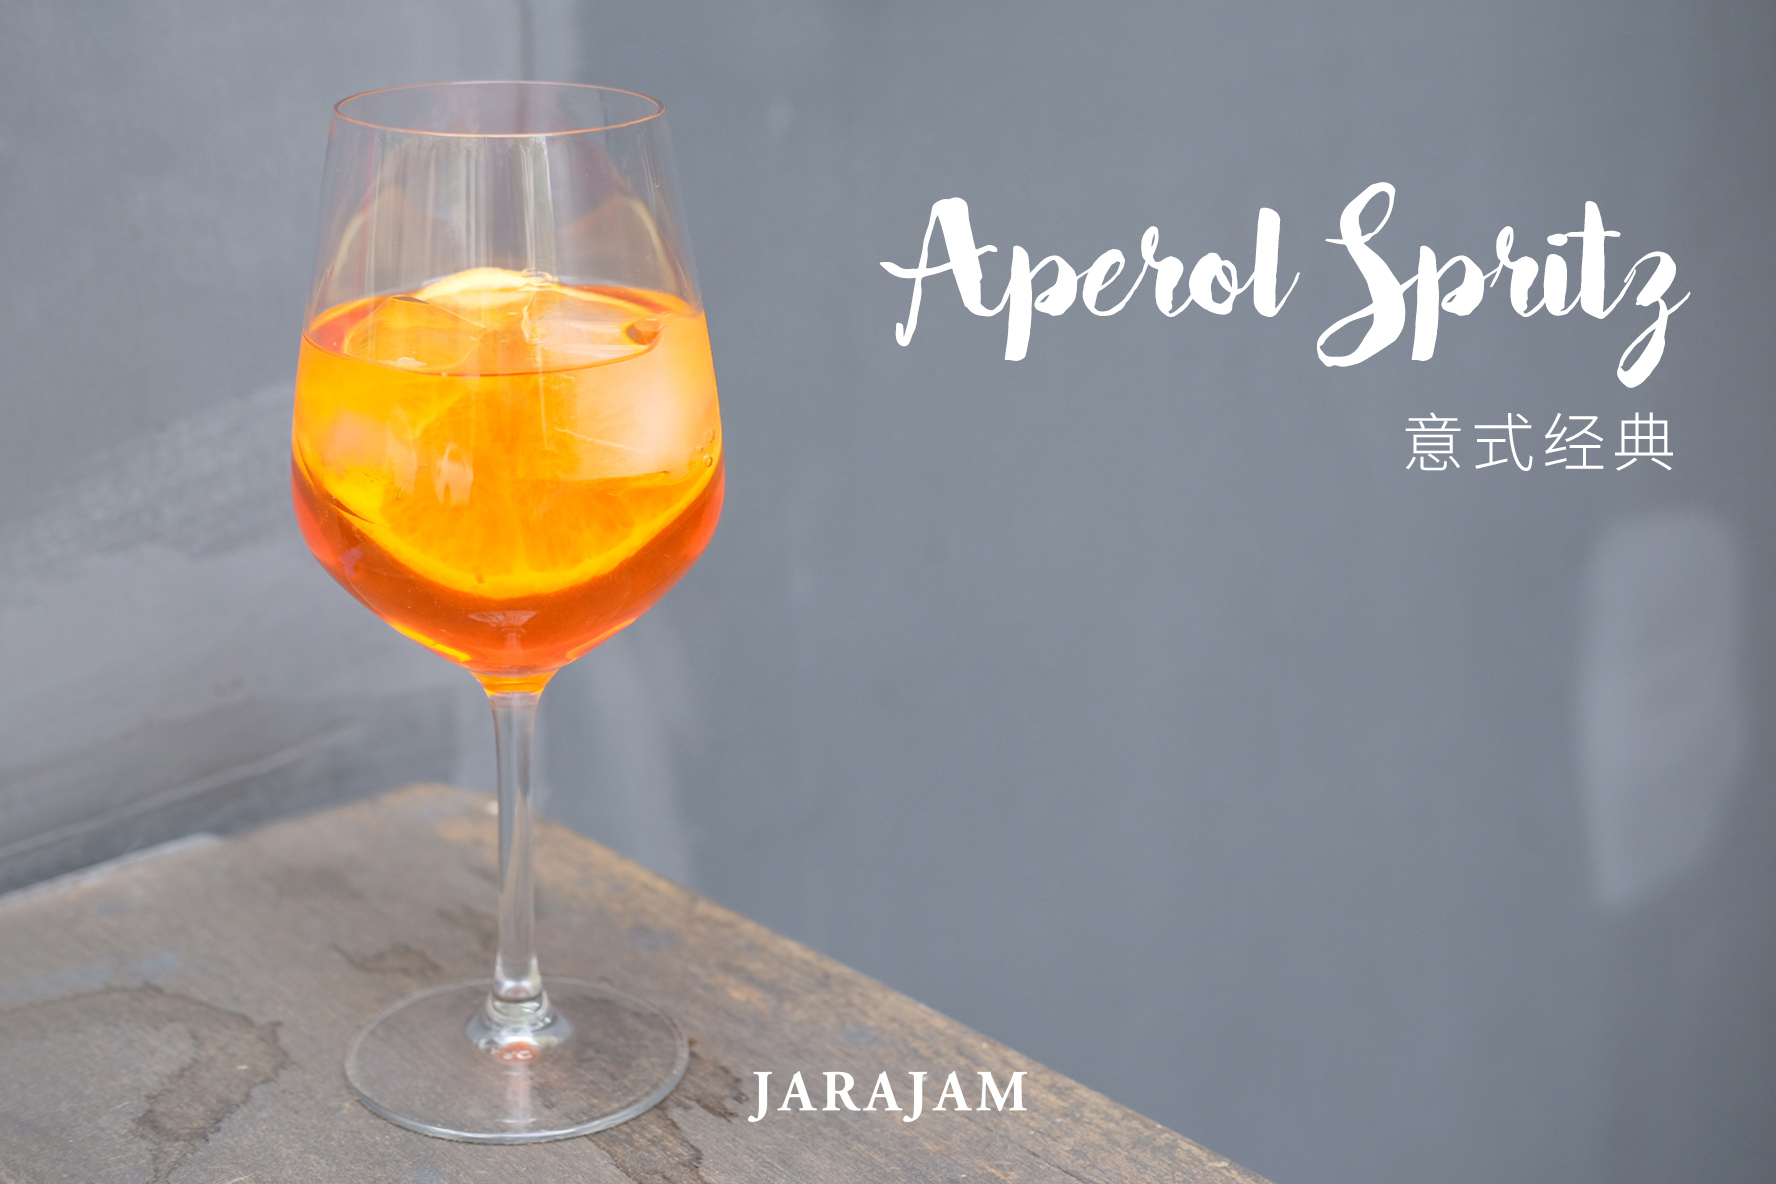 一分钟上手自制经典鸡尾酒-Aperol Spritz 意式经典橙味酒的做法